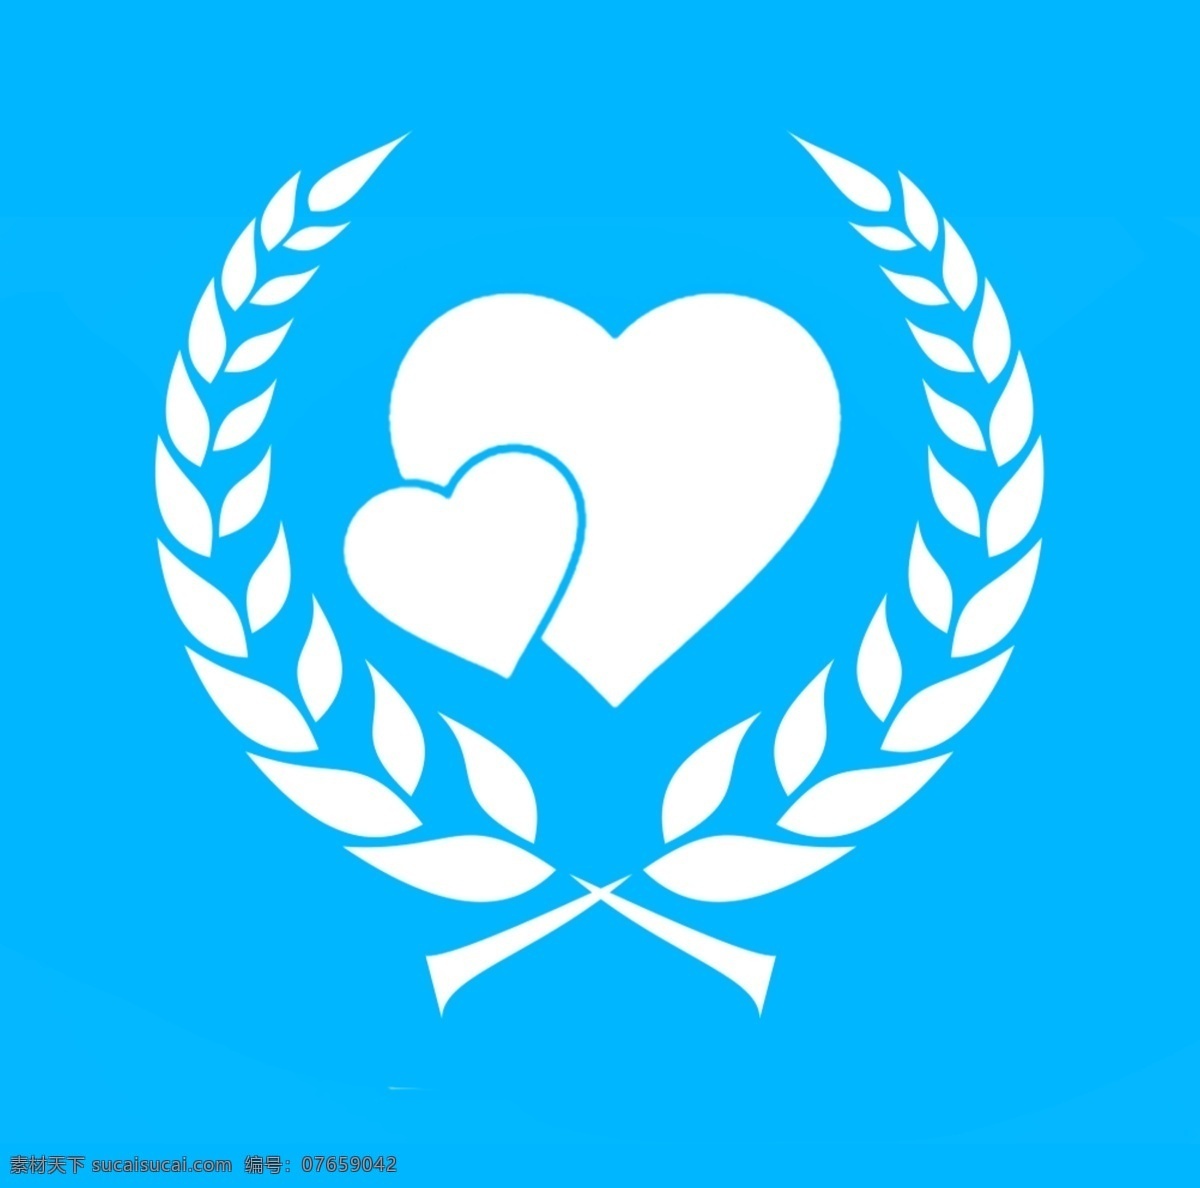 橄榄枝与爱心 橄榄枝 爱心 和平 公益 重生 心 青色 天蓝色